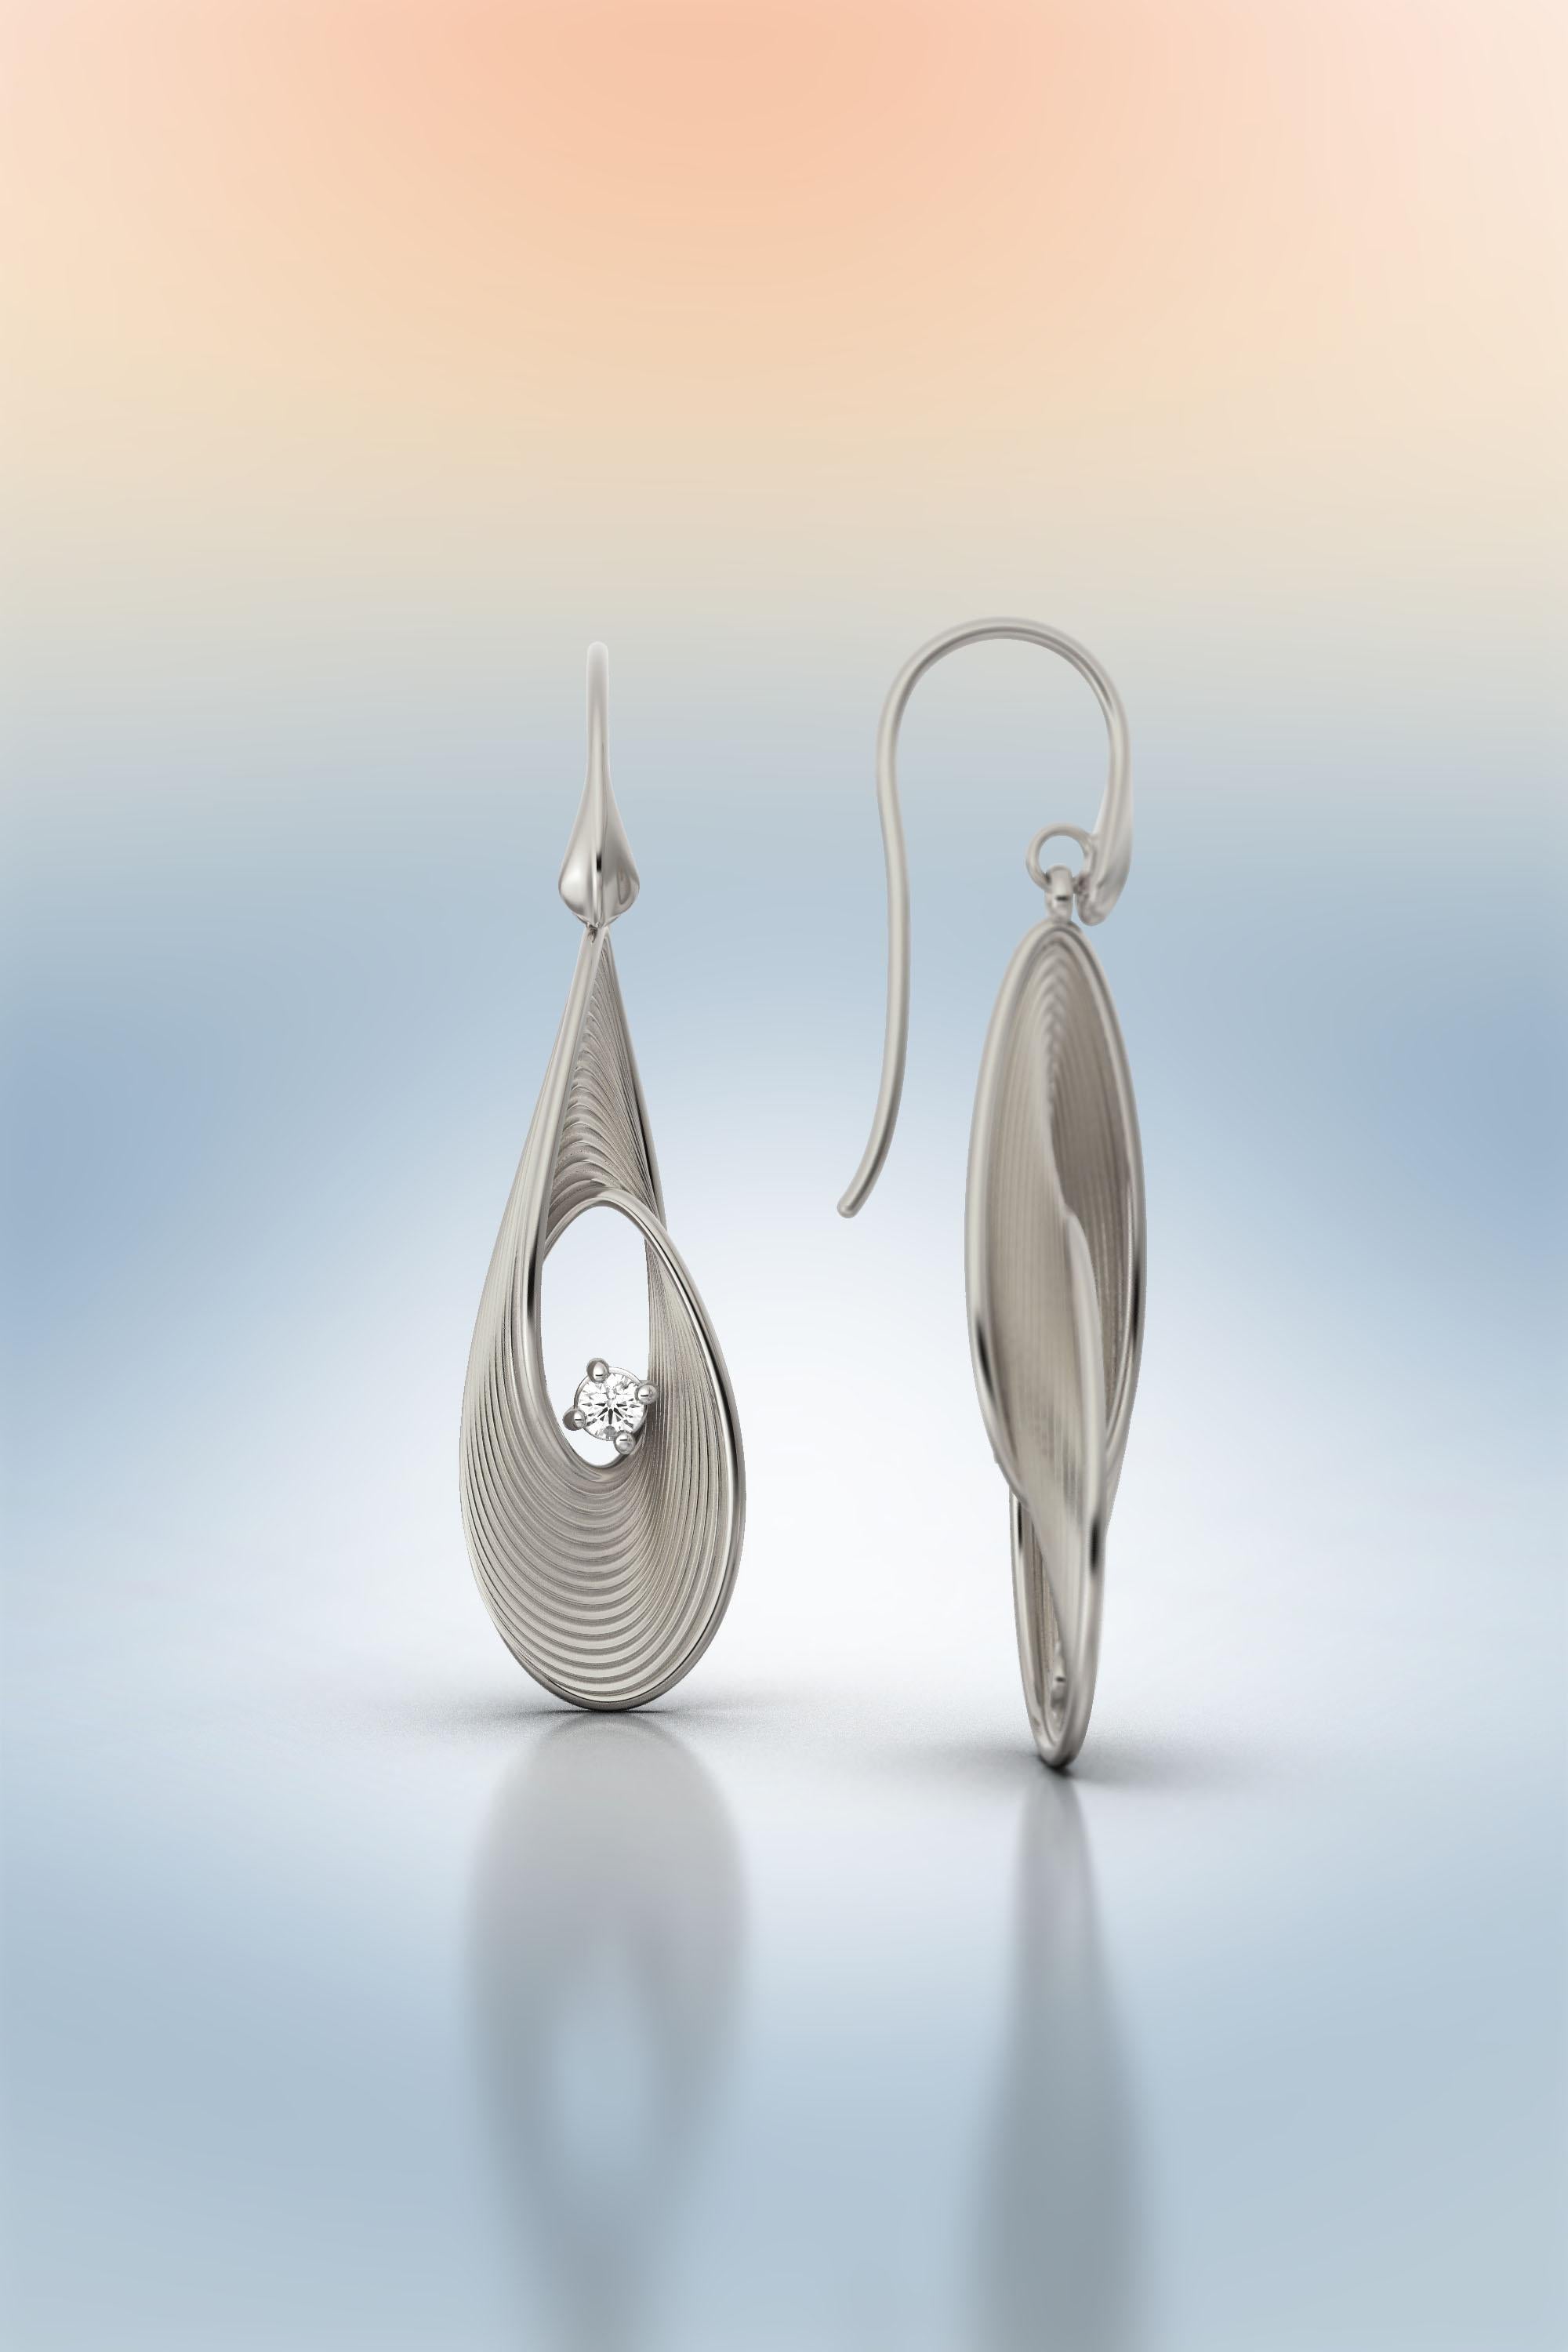 Oltremare Gioielli Diamond Earrings, Dangle Drop Earrings in 18k Solid Gold For Sale 2